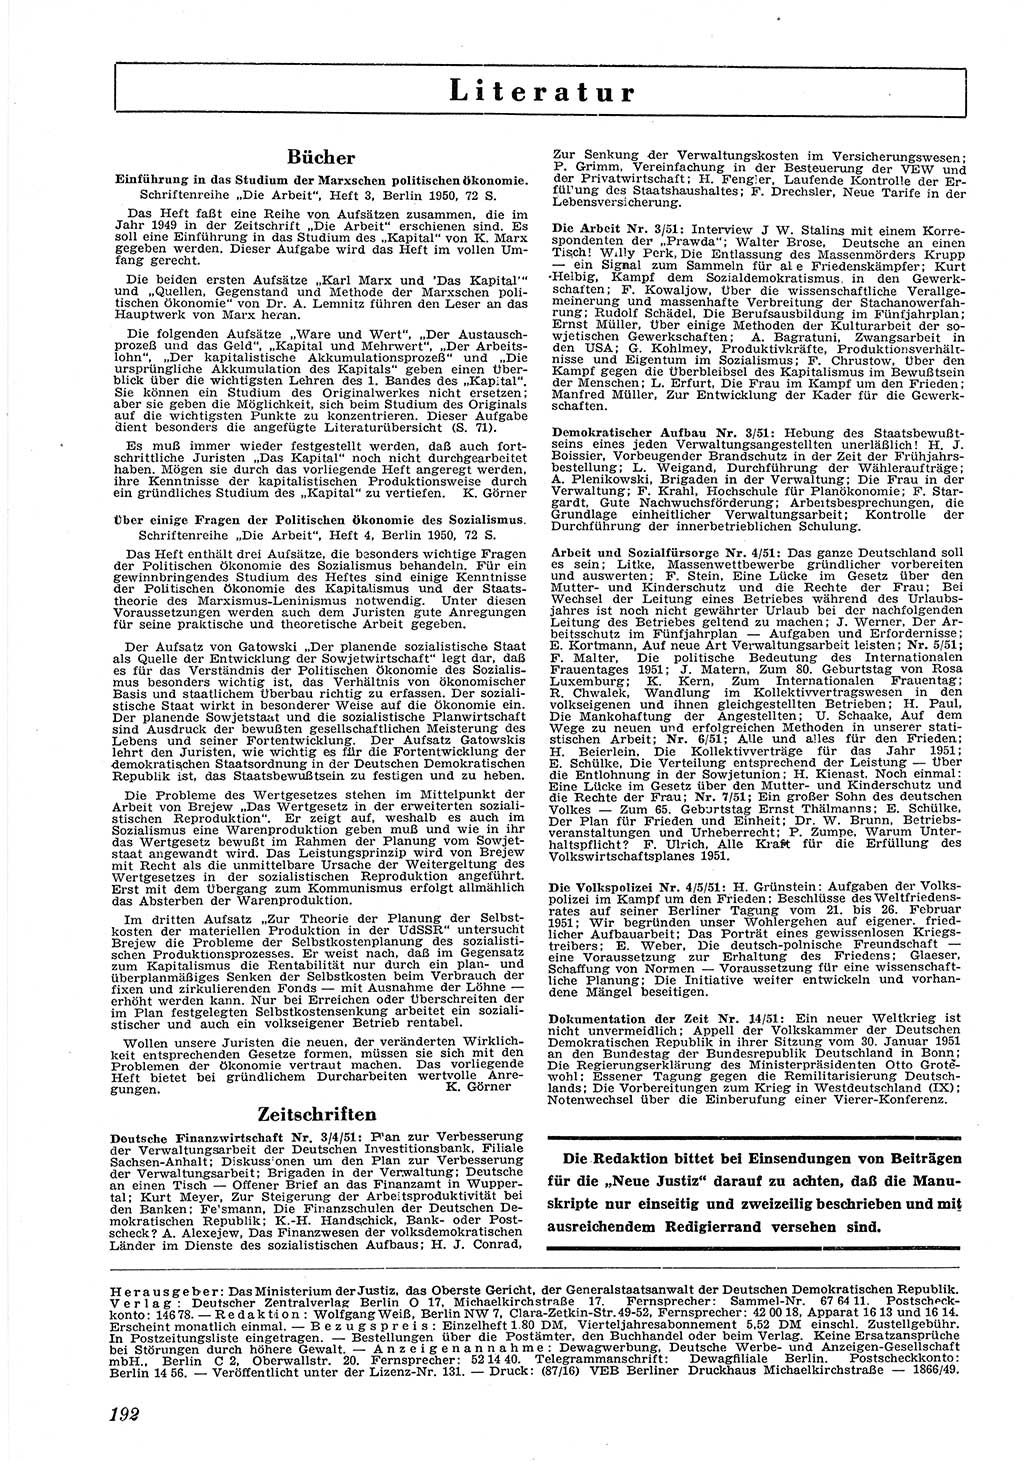 Neue Justiz (NJ), Zeitschrift für Recht und Rechtswissenschaft [Deutsche Demokratische Republik (DDR)], 5. Jahrgang 1951, Seite 192 (NJ DDR 1951, S. 192)